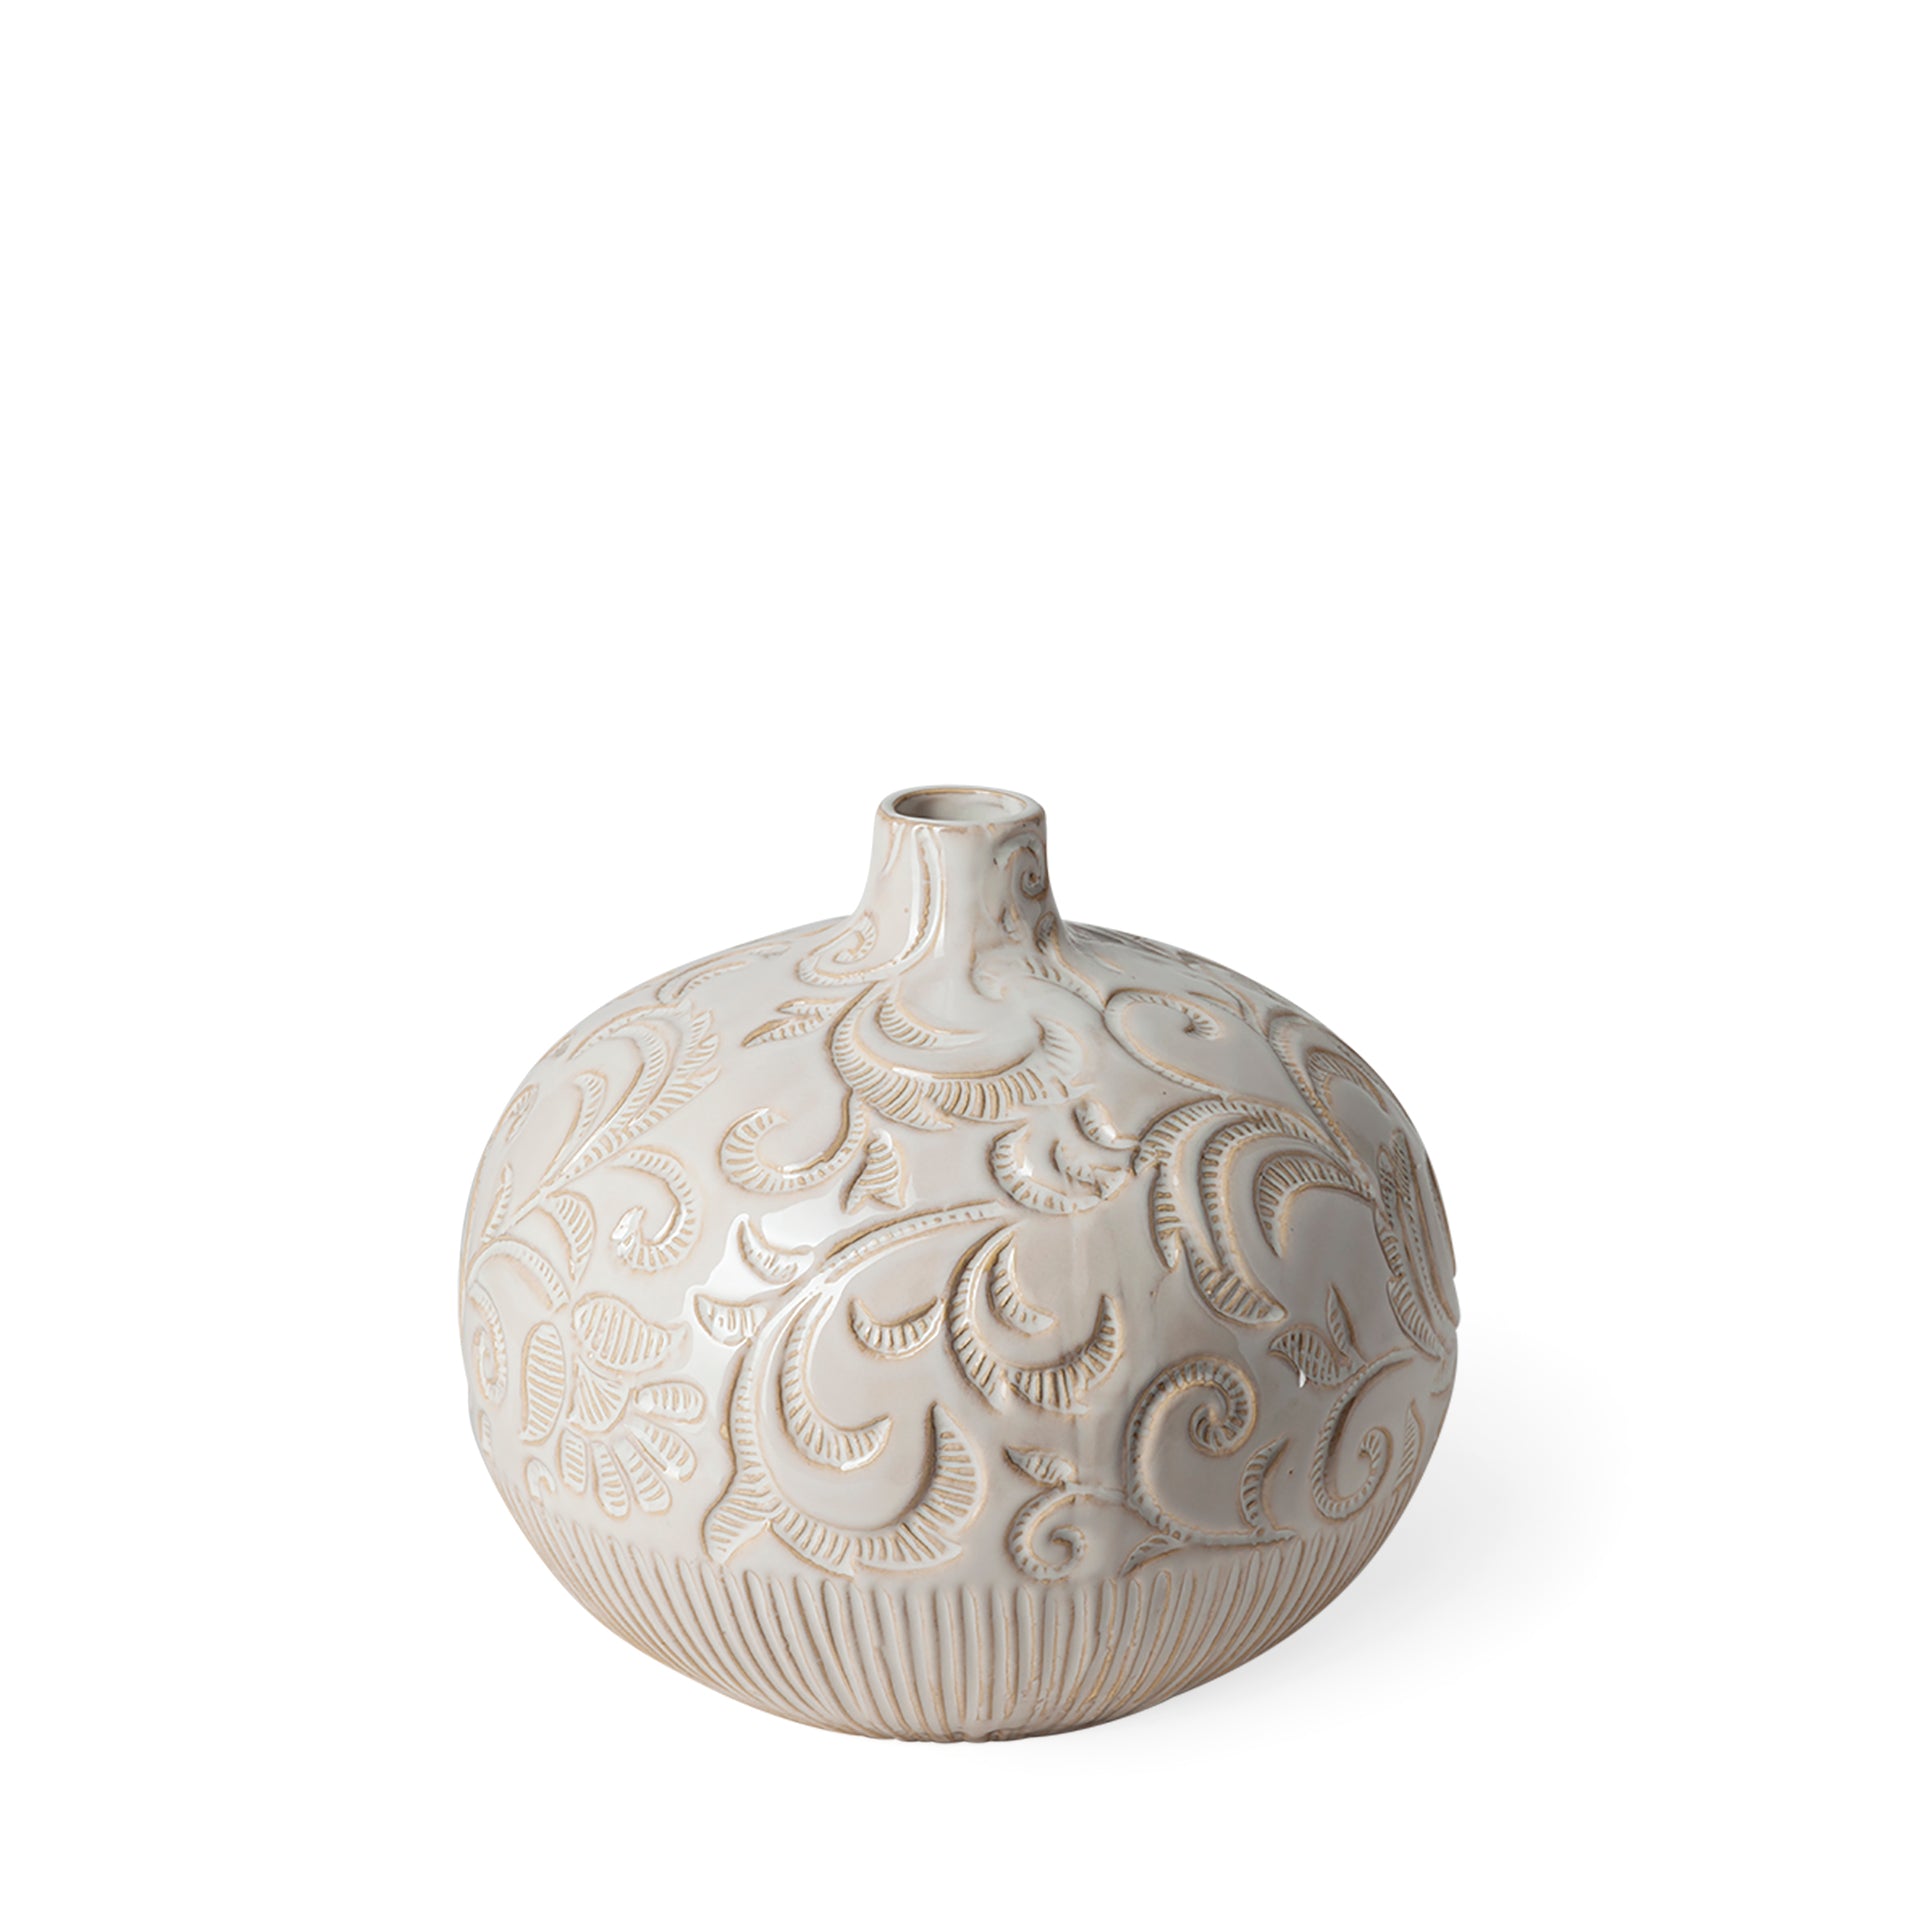 White Glaze Floral Patterned Ceramic Vase - 9.8"